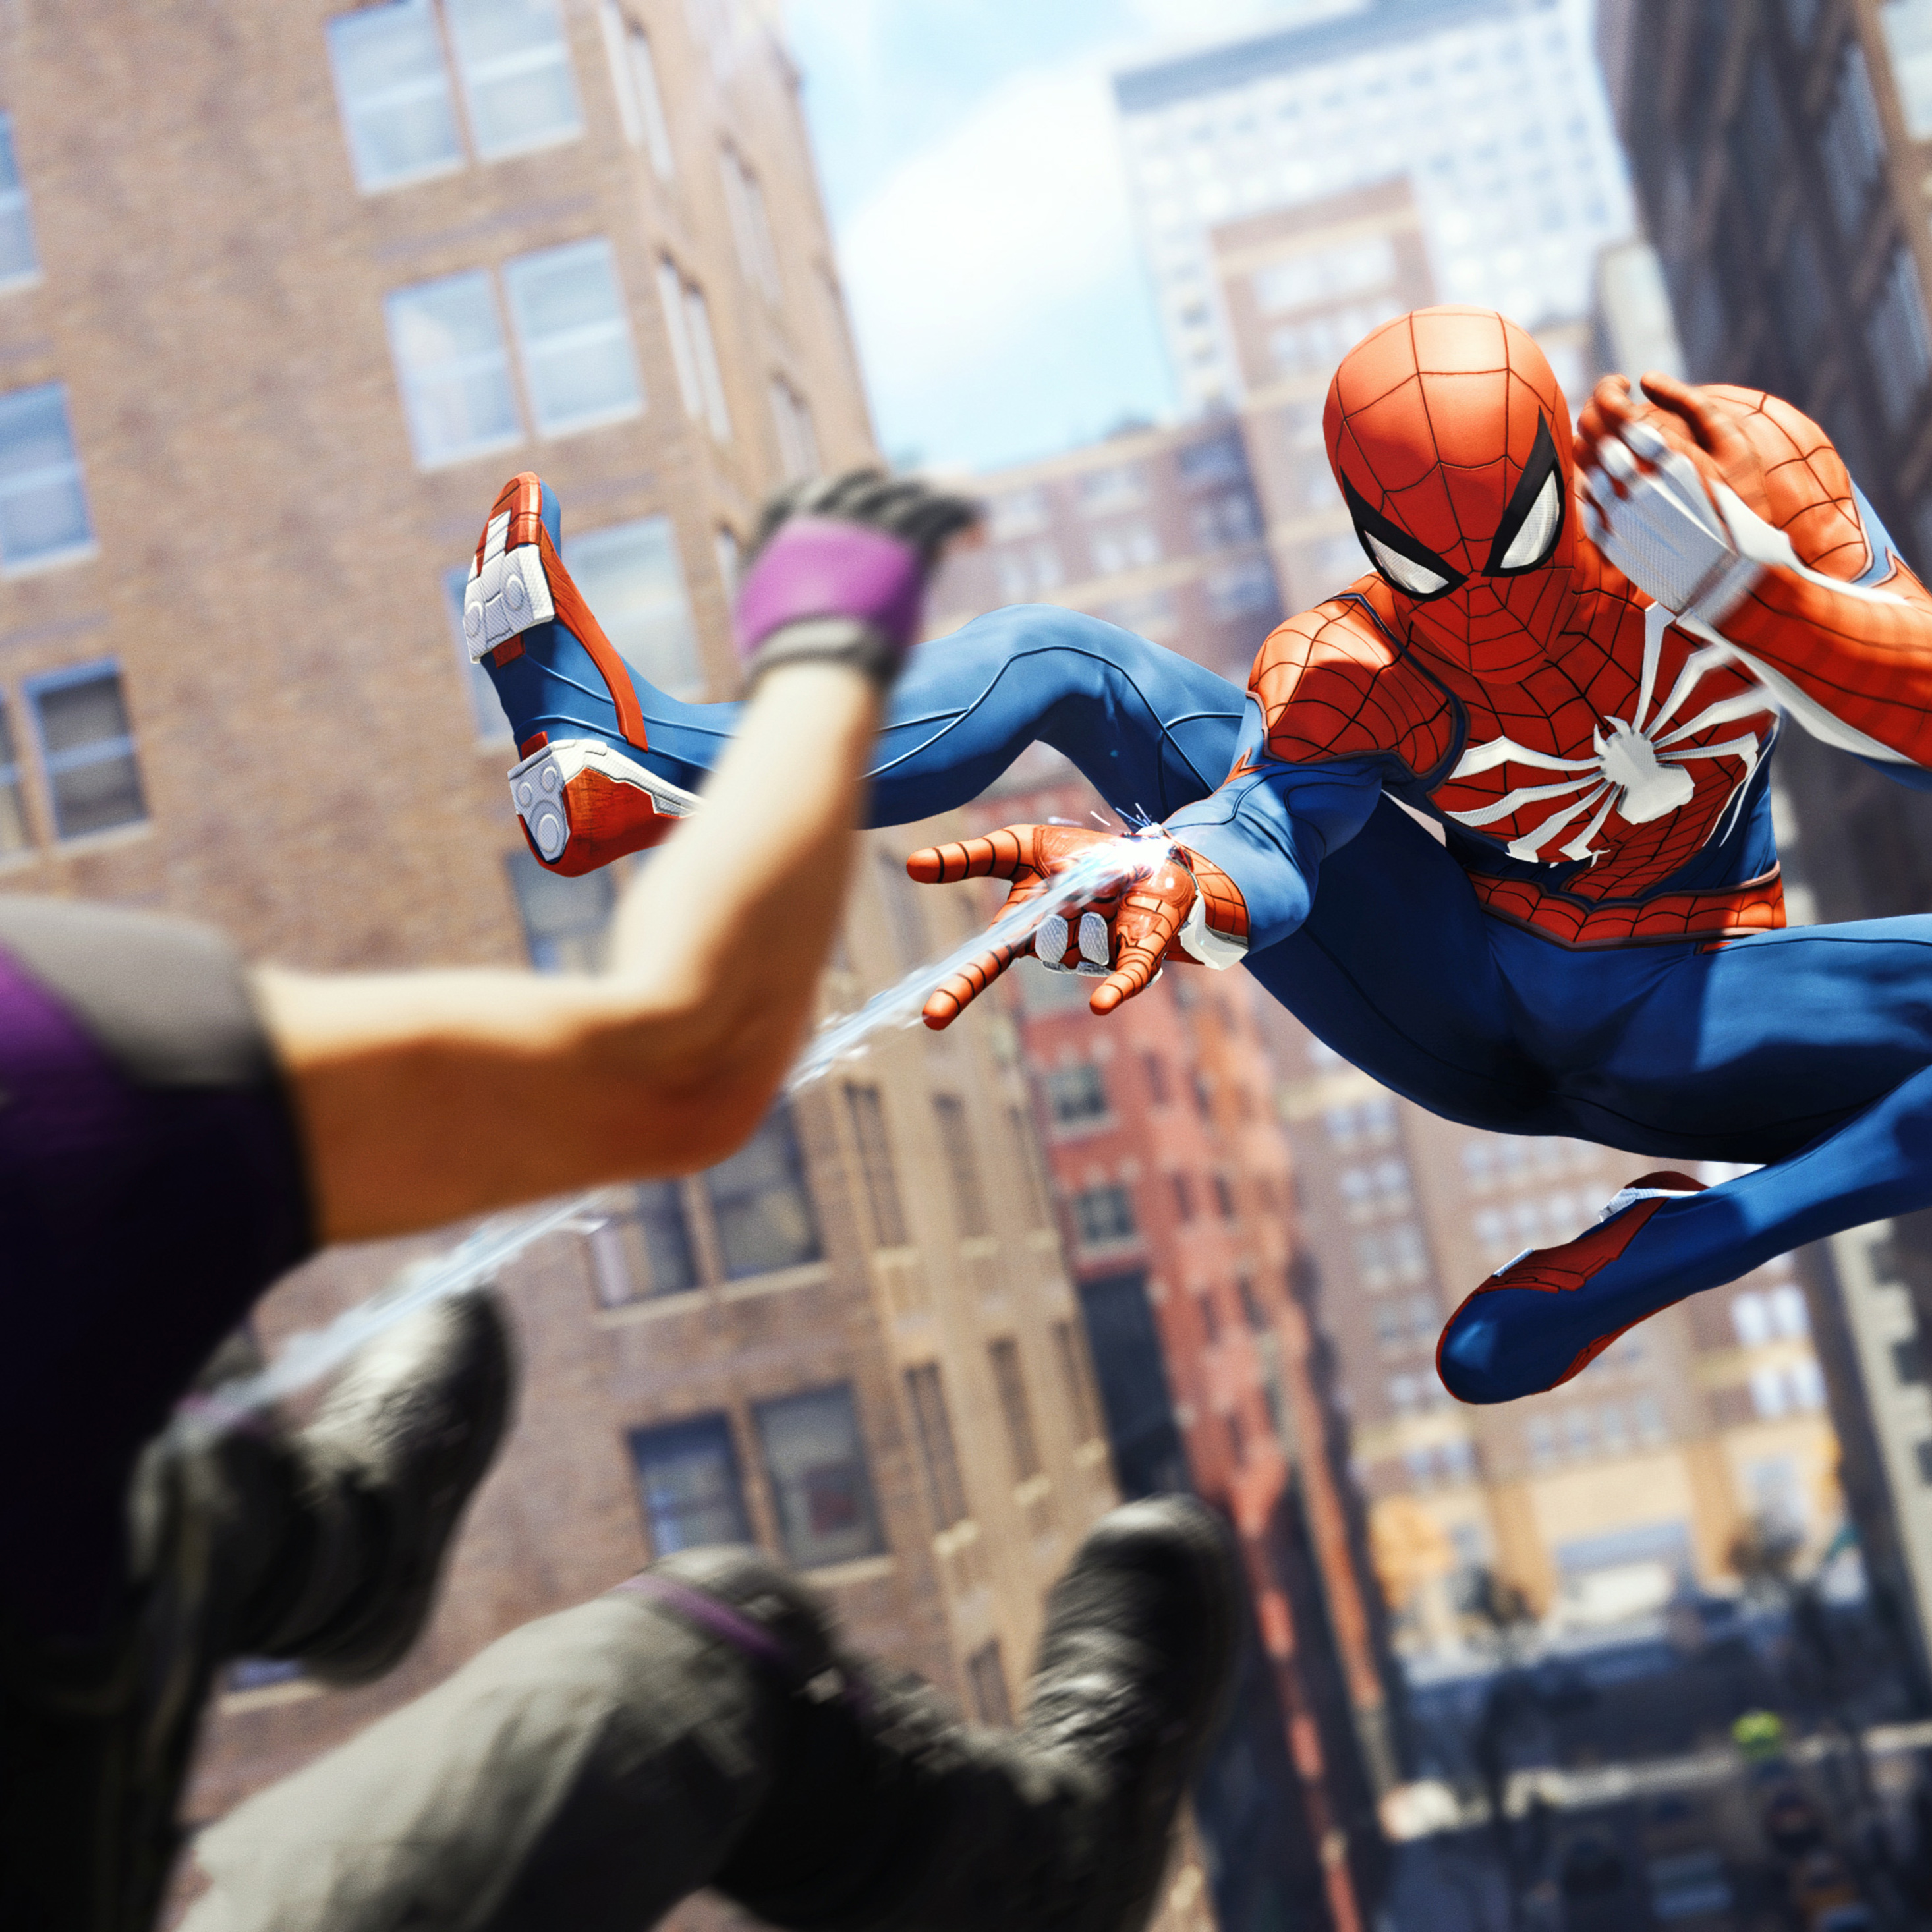 Я хочу человека играть. Человек паук. Spider man 2018 обзор. Spider man на PS 4 2018 год. Игра Spider-man 2018 banner.